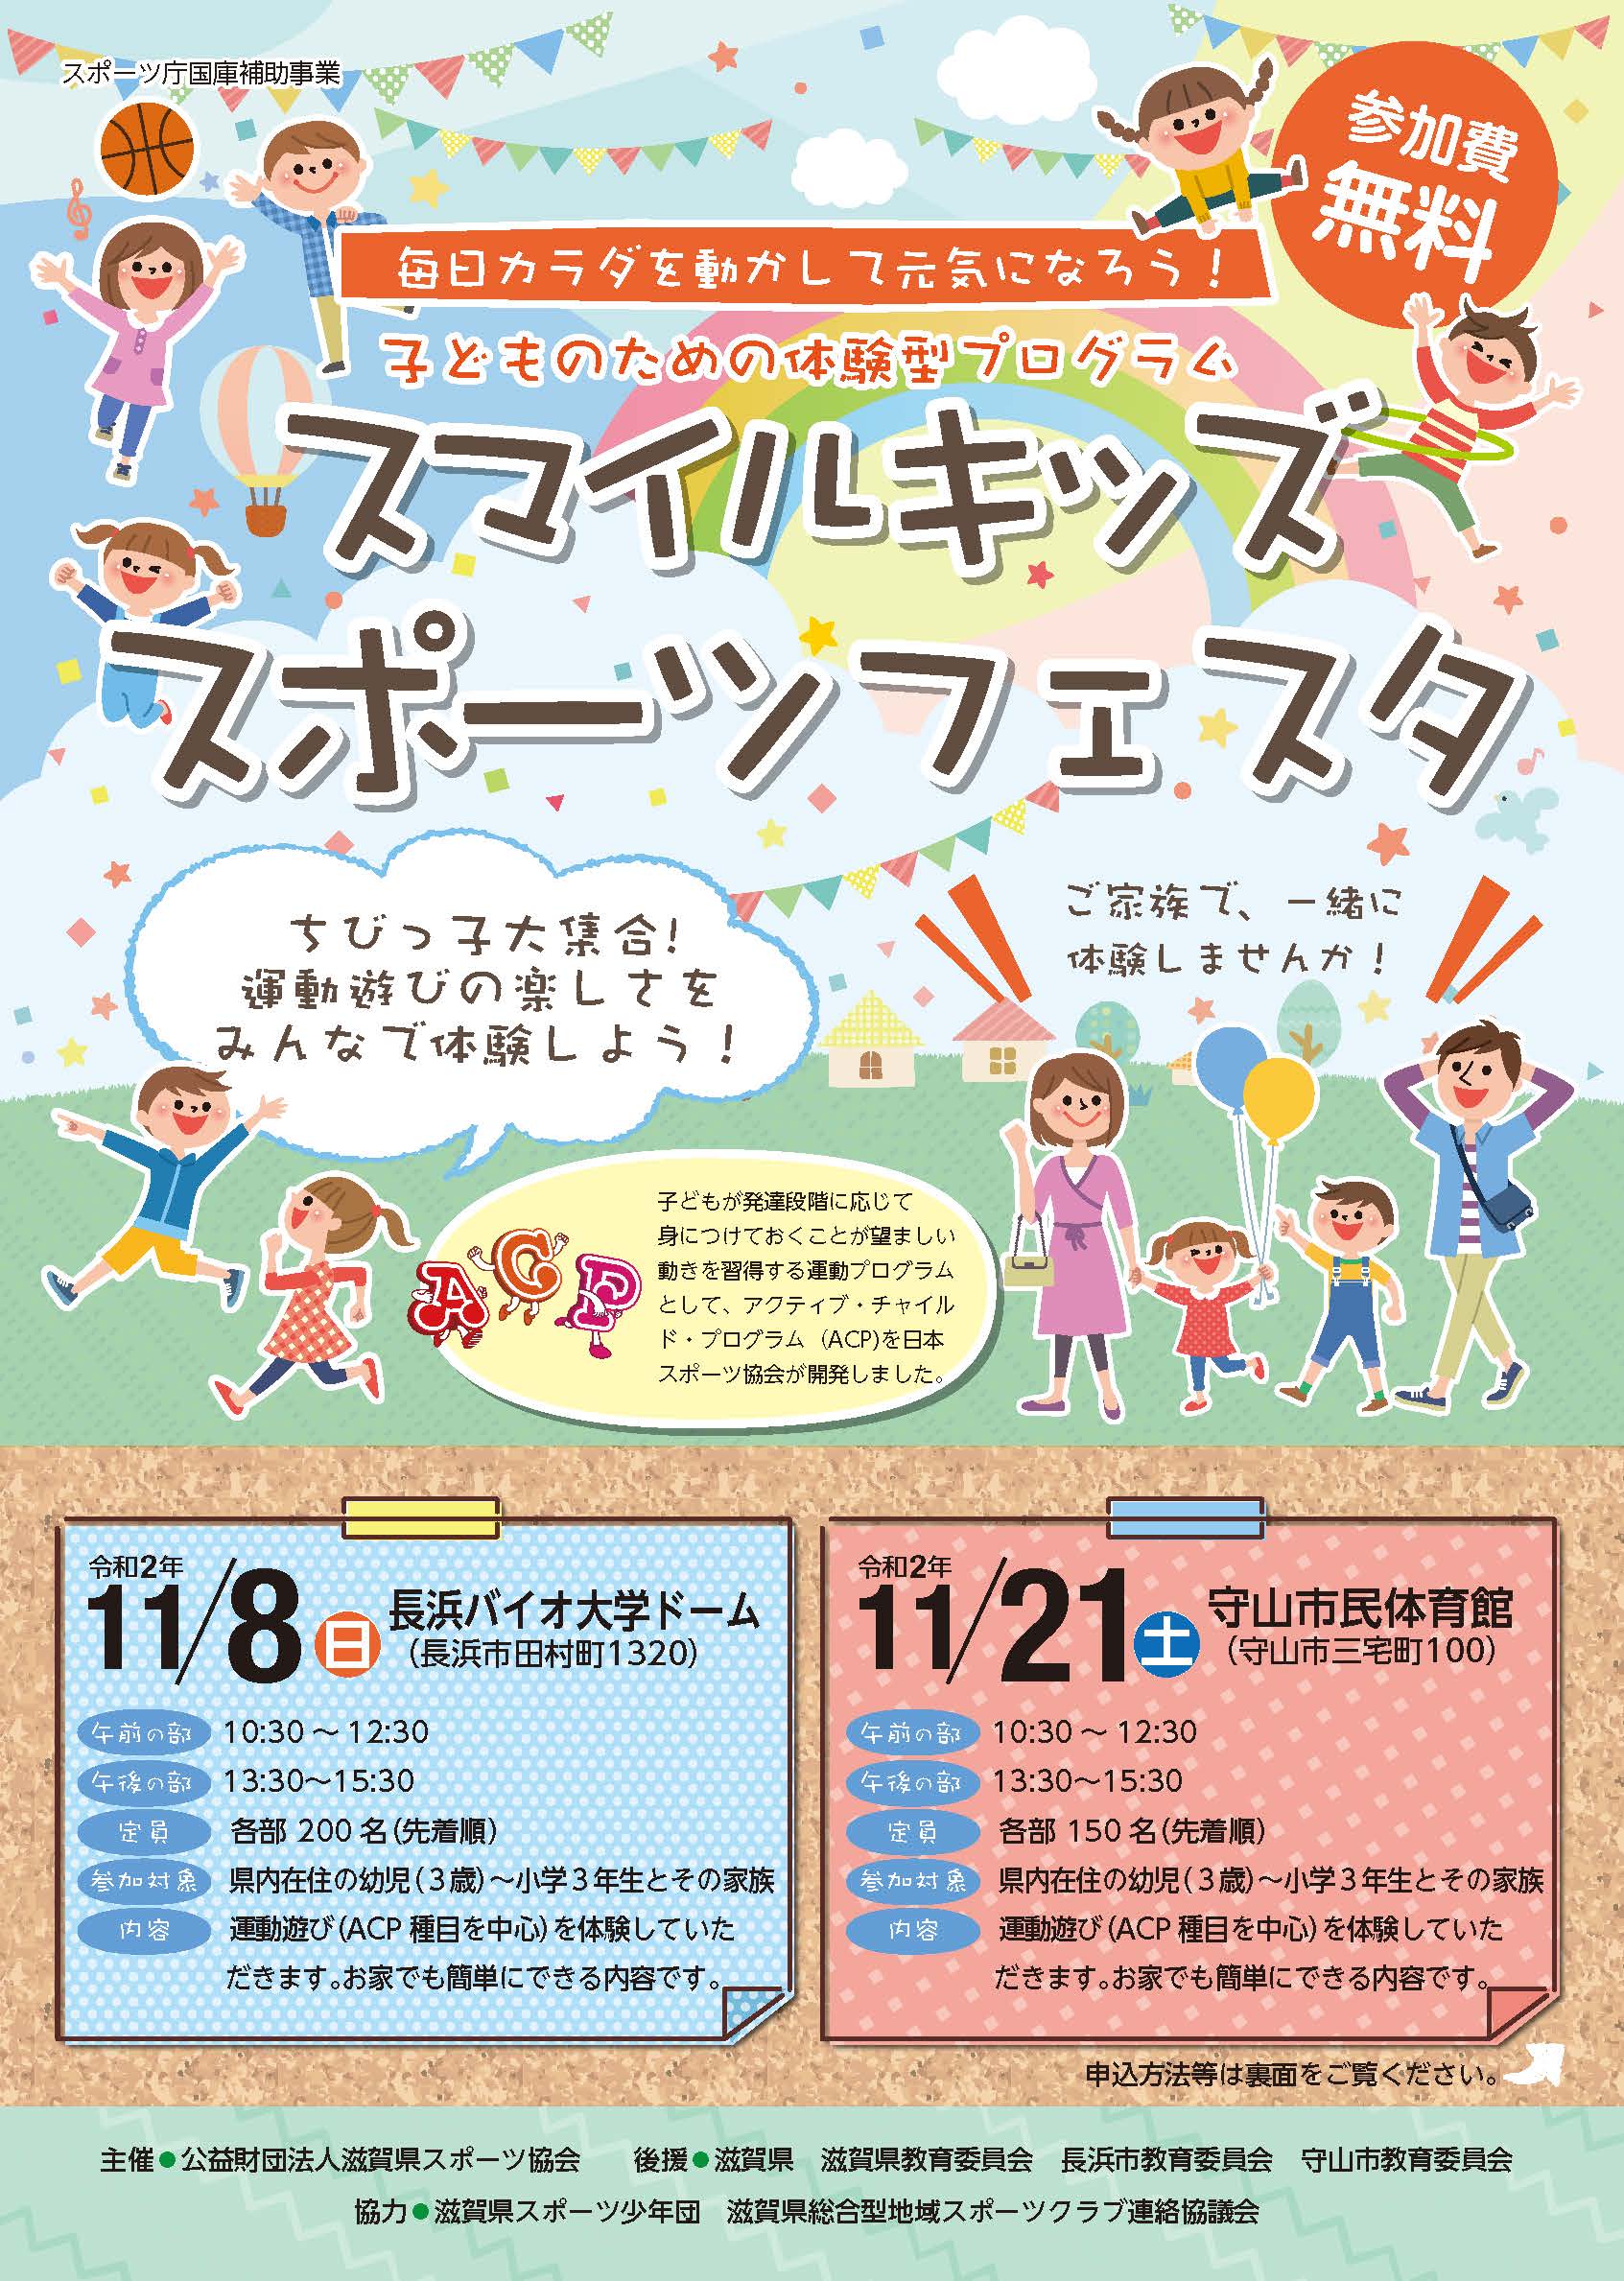 子どものための体験型プログラム スマイルキッズスポーツフェスタ を開催します 滋賀県スポーツ協会 旧滋賀県体育協会